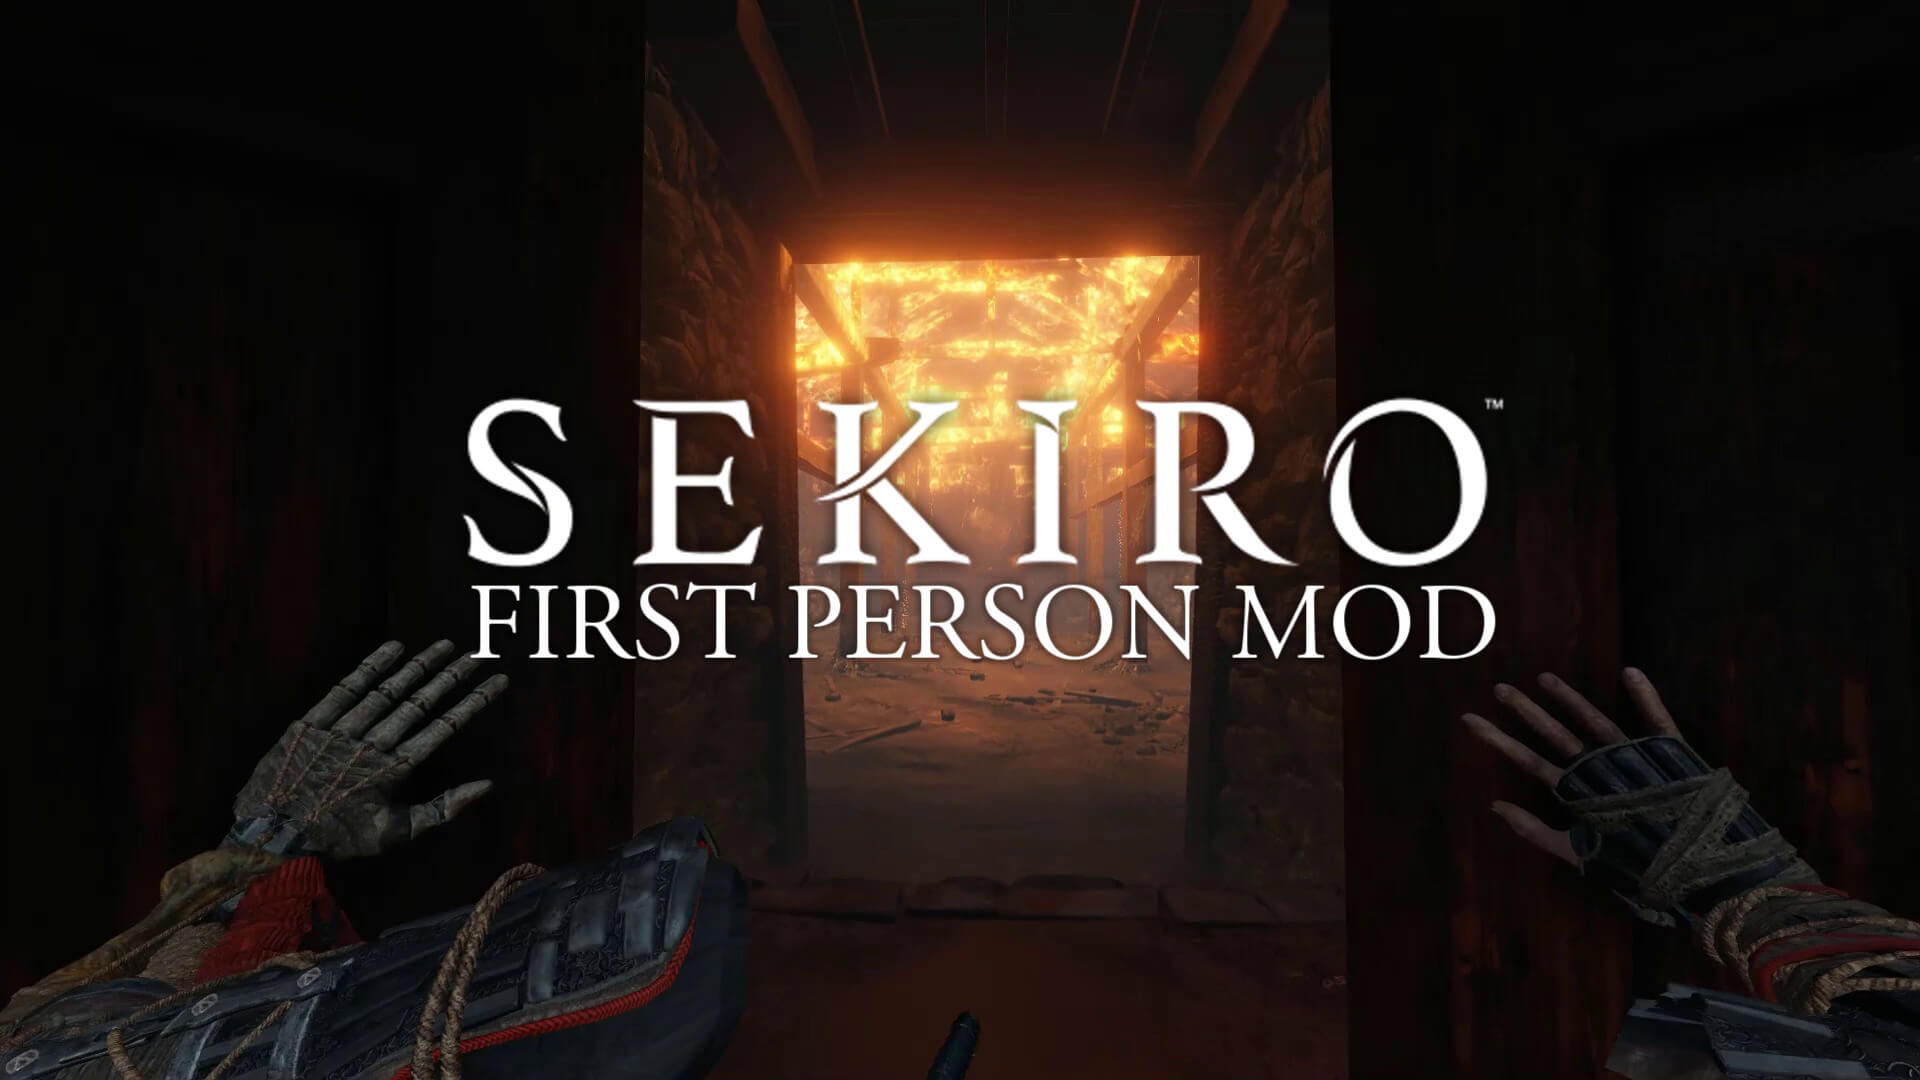 Теперь вы можете играть в Sekiro: Shadows Die Twice в режиме от первого лица благодаря этому удивительному моду